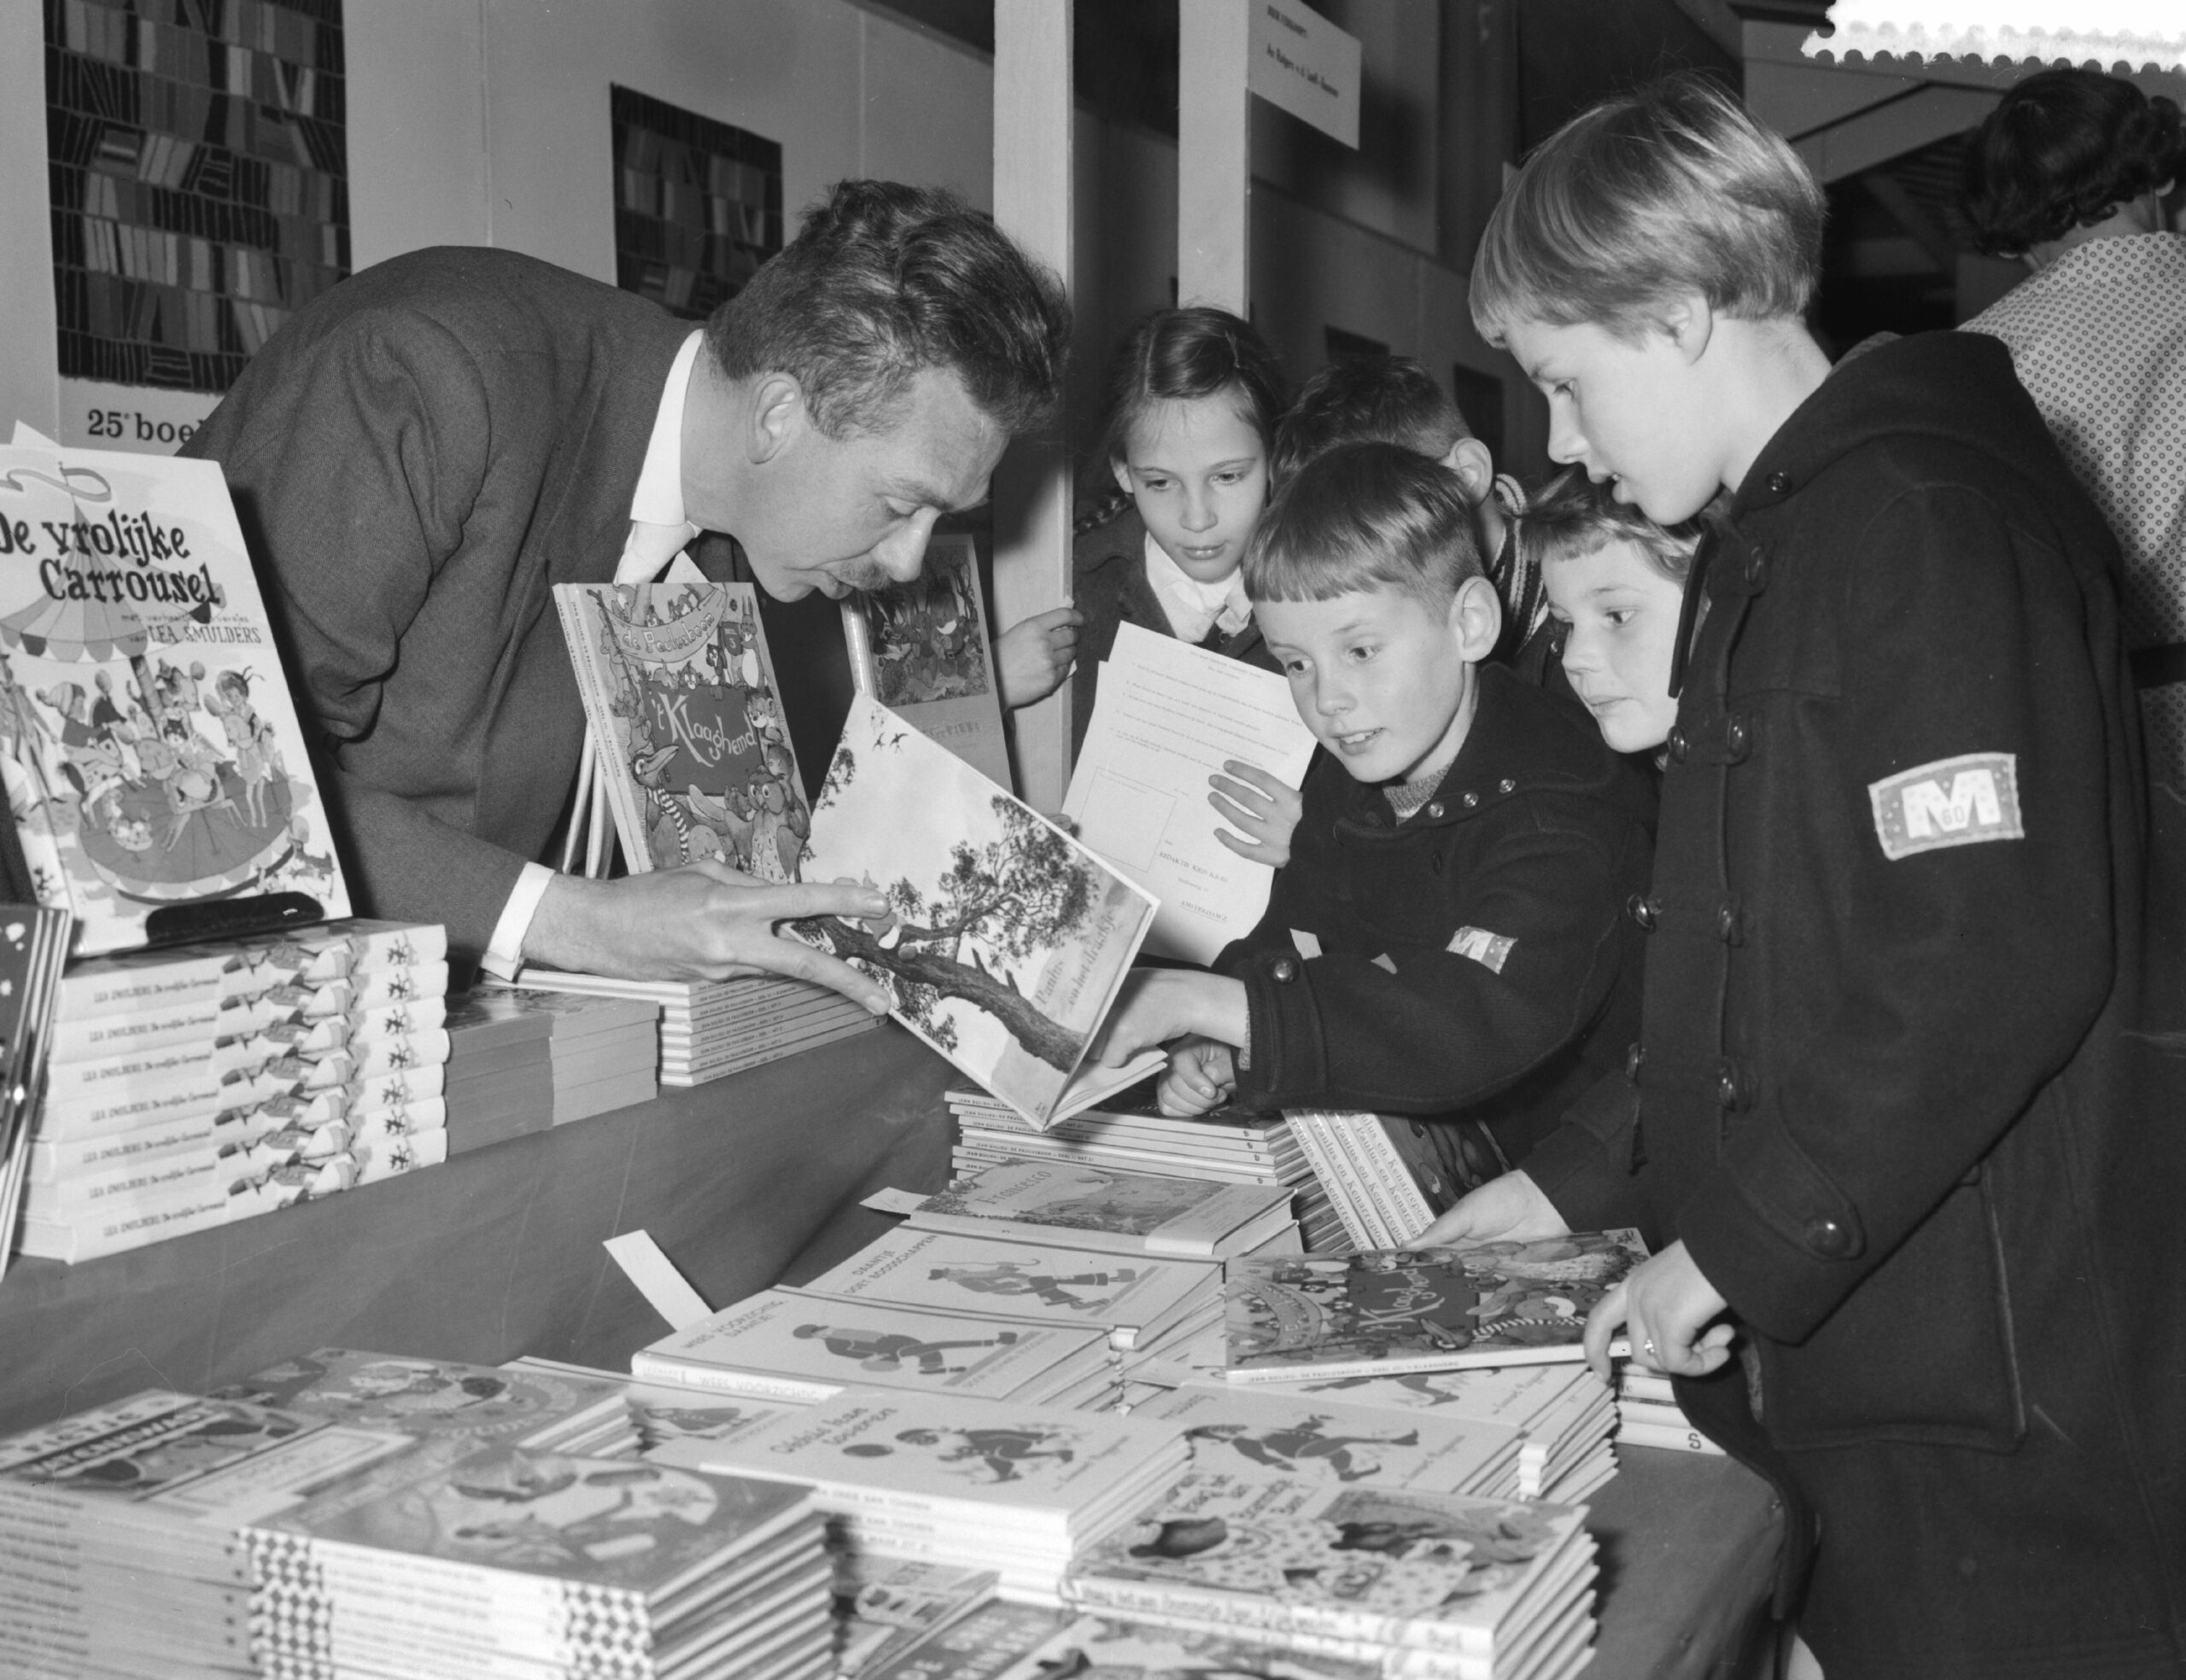 Kinderboekenweek, een Nederlandse traditie sinds 1955